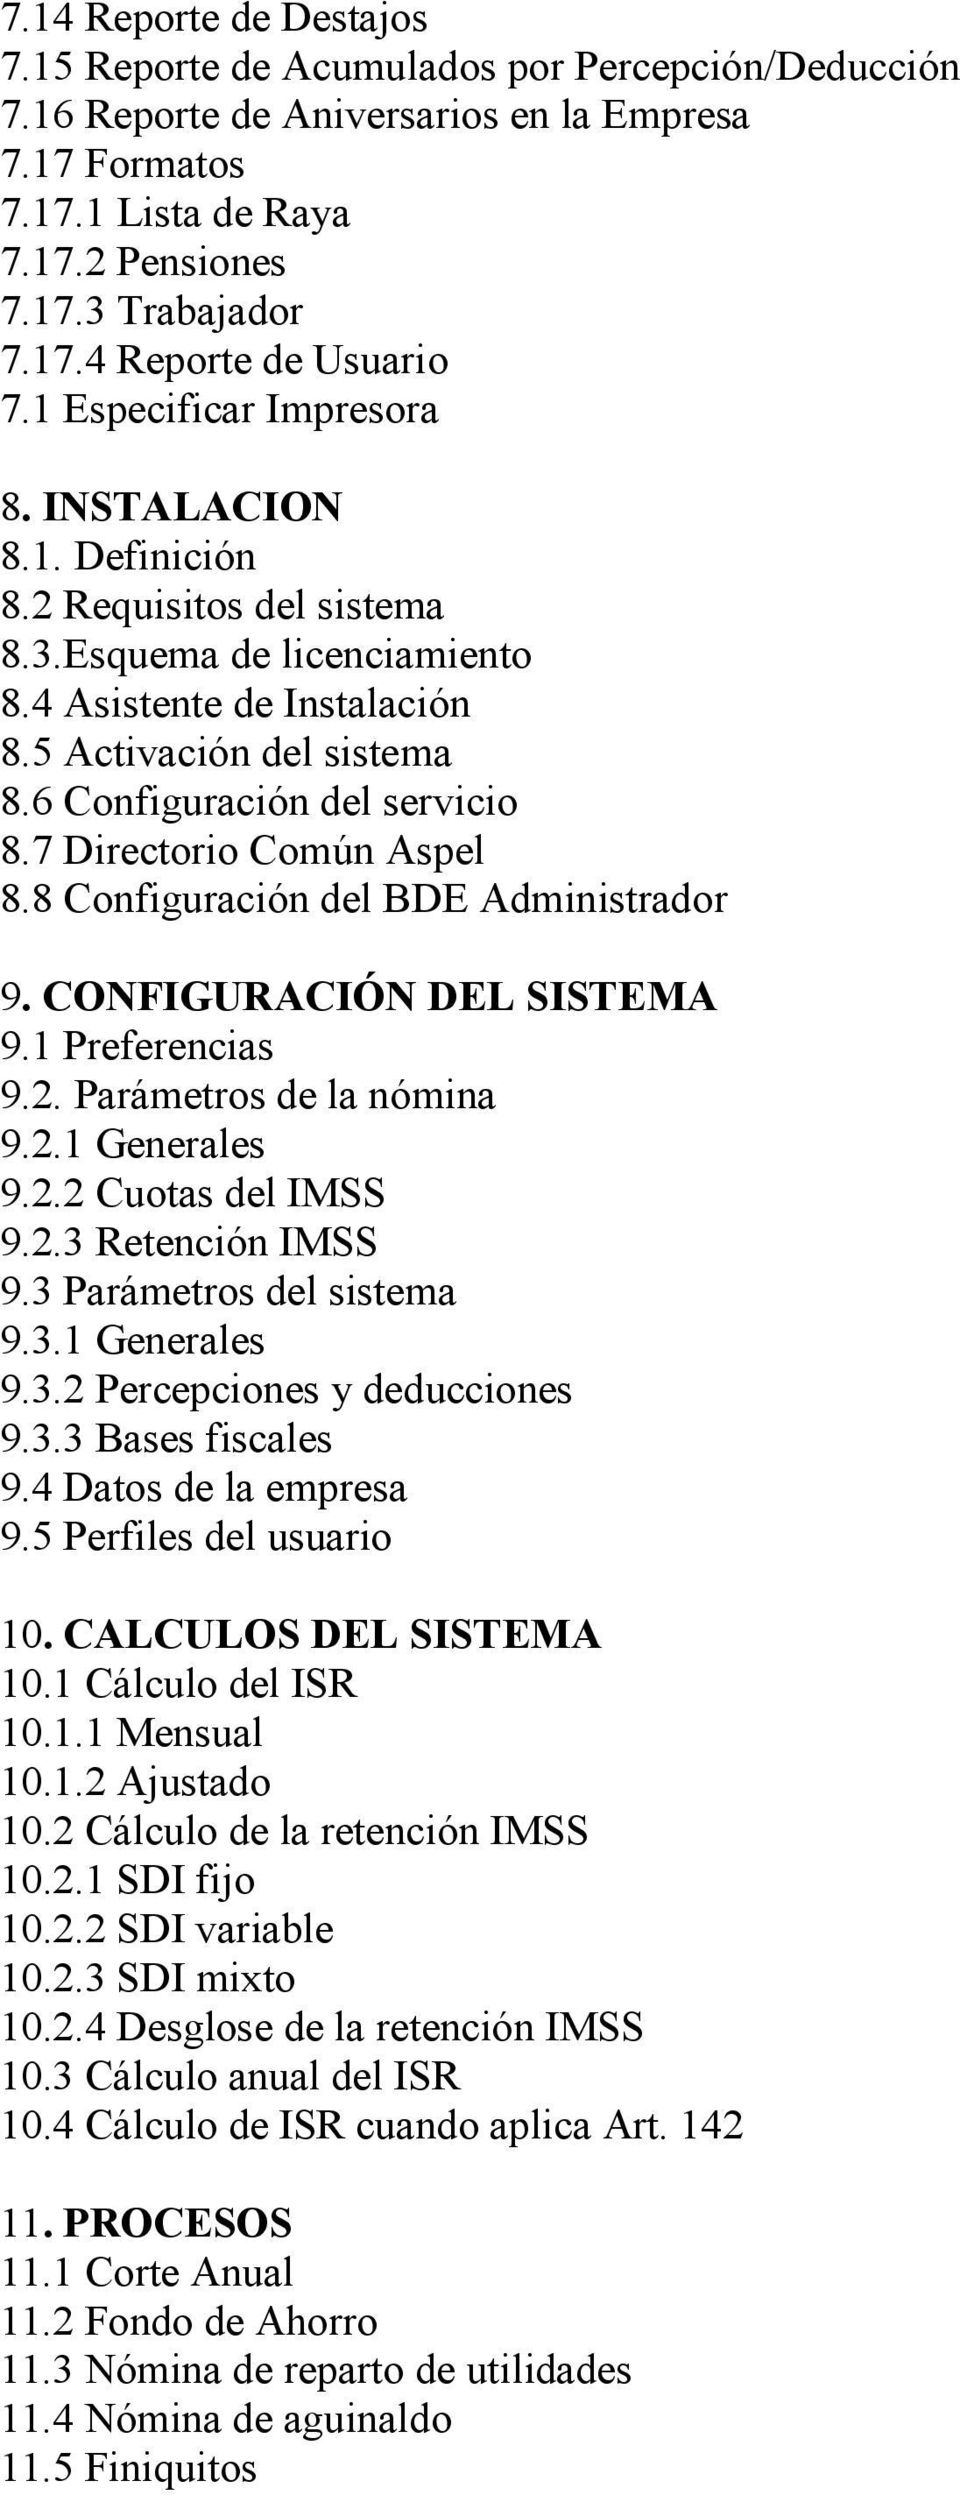 6 Configuración del servicio 8.7 Directorio Común Aspel 8.8 Configuración del BDE Administrador 9. CONFIGURACIÓN DEL SISTEMA 9.1 Preferencias 9.2. Parámetros de la nómina 9.2.1 Generales 9.2.2 Cuotas del IMSS 9.